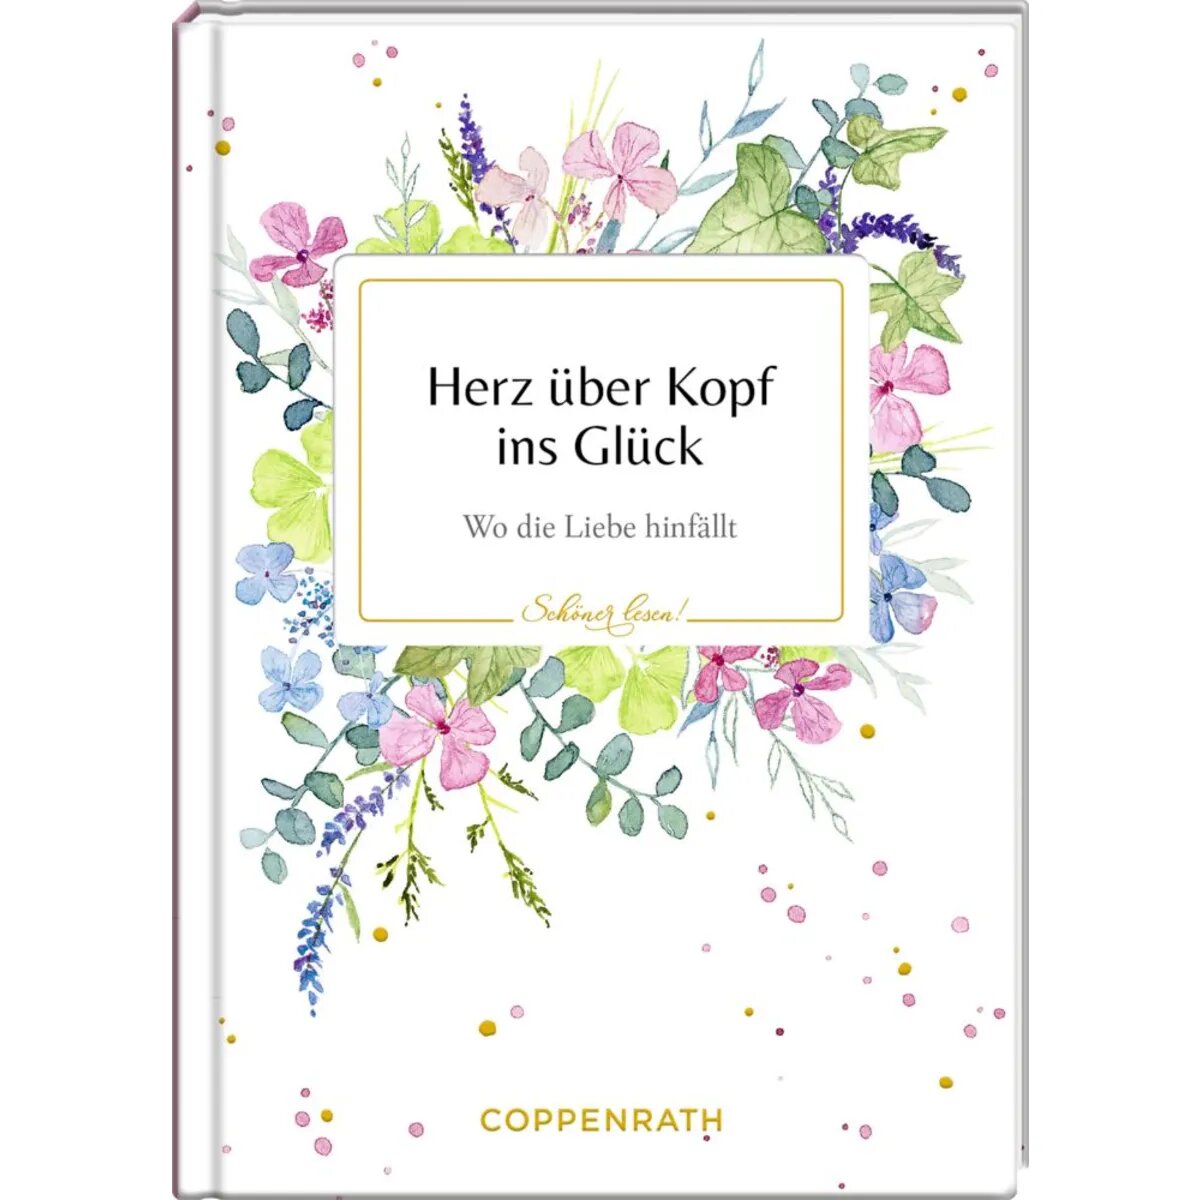 Coppenrath Verlag Schöner lesen! No. 33: Herz über Kopf ins Glück